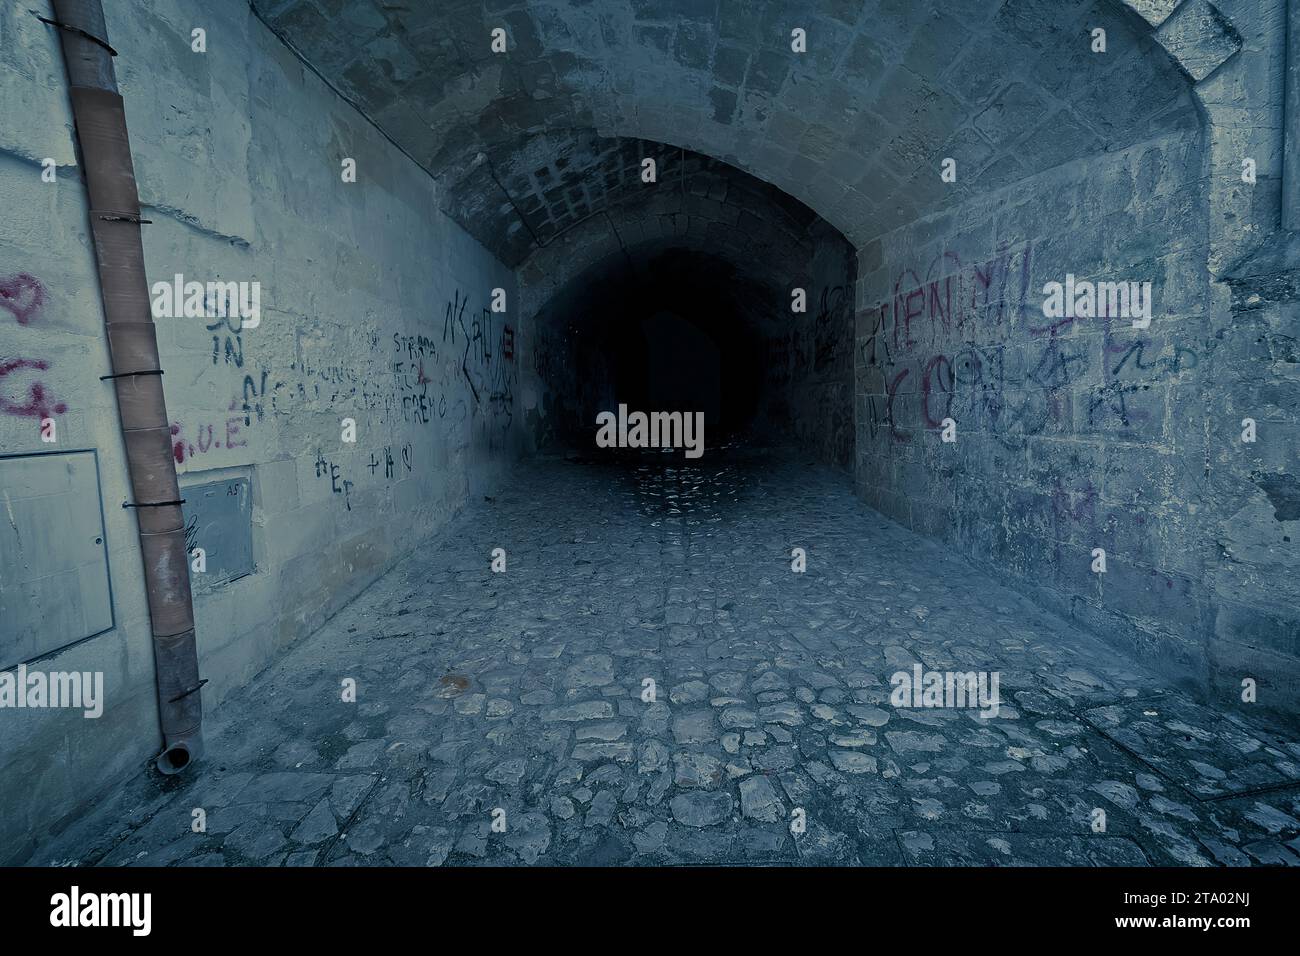 Verlassener dunkler gruseliger und klaustrophobischer Tunnel, mit Schriftzug auf Ziegelmauer, Desolationskonzept Stockfoto